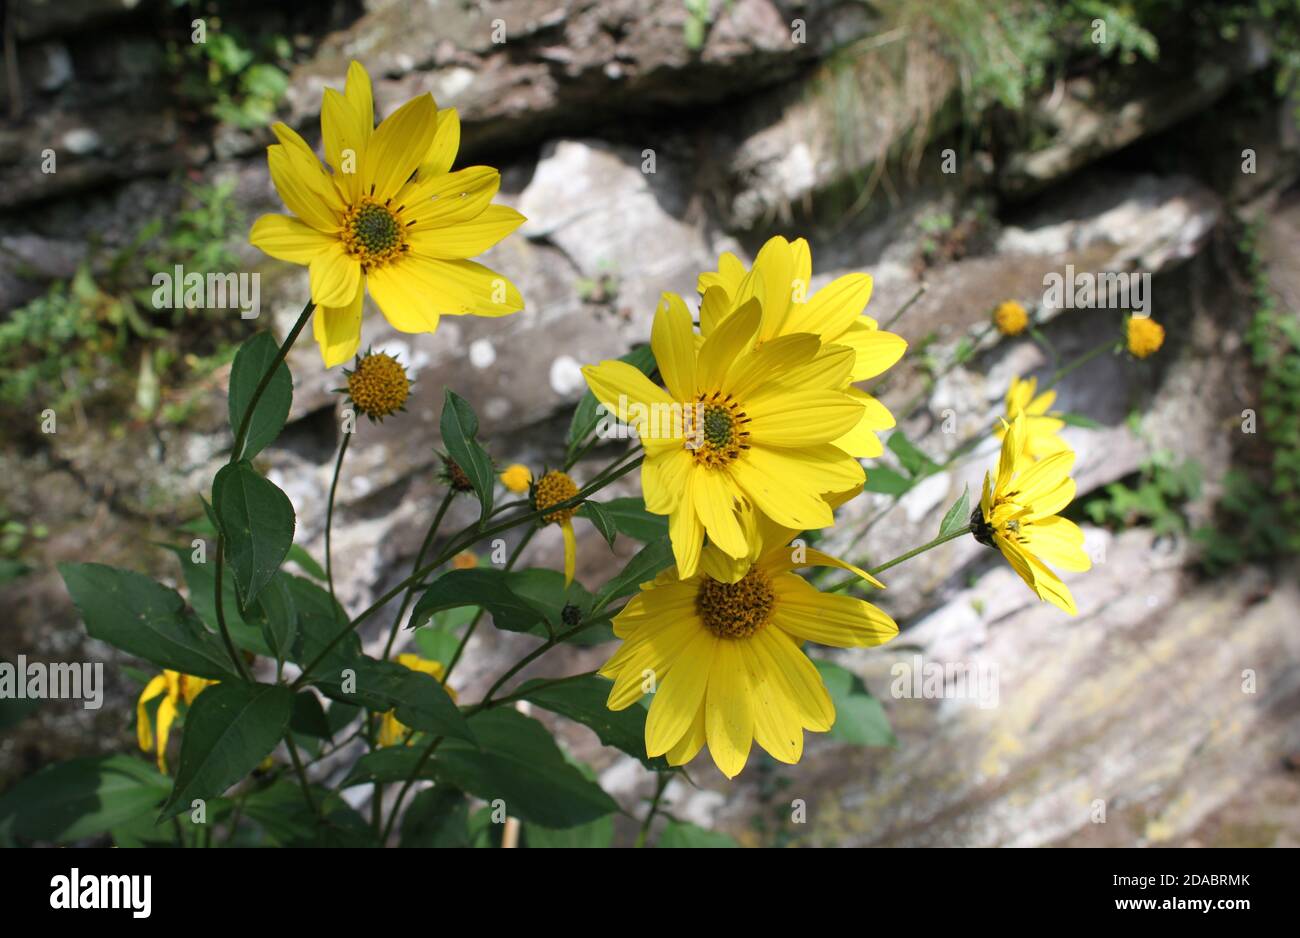 Audaci fiori gialli contro il tradizionale muro di pietra. Sole in giardino, parchi estivi. Raggi di sole che si riflettono su petali gialli luminosi. Foto Stock